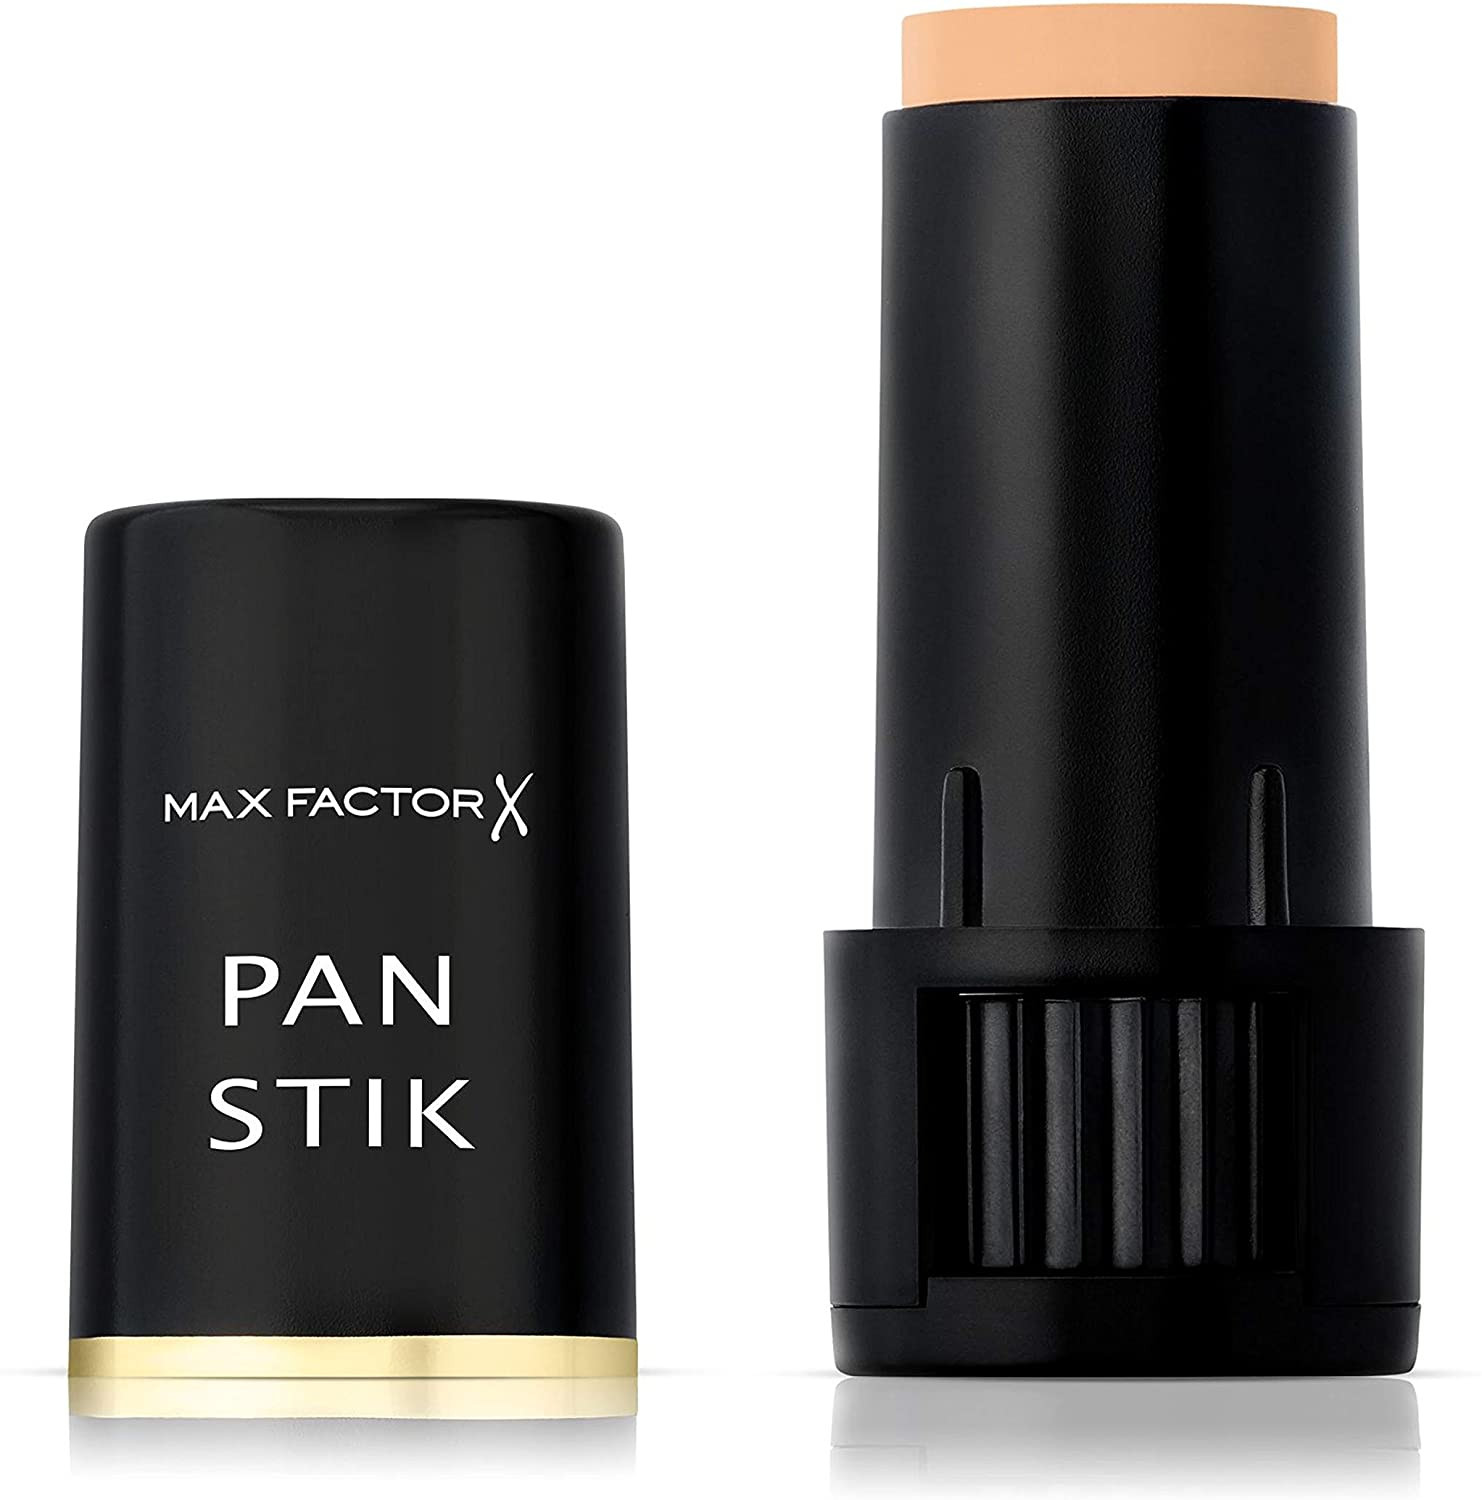 Max Factor Pan Stick Makeup...